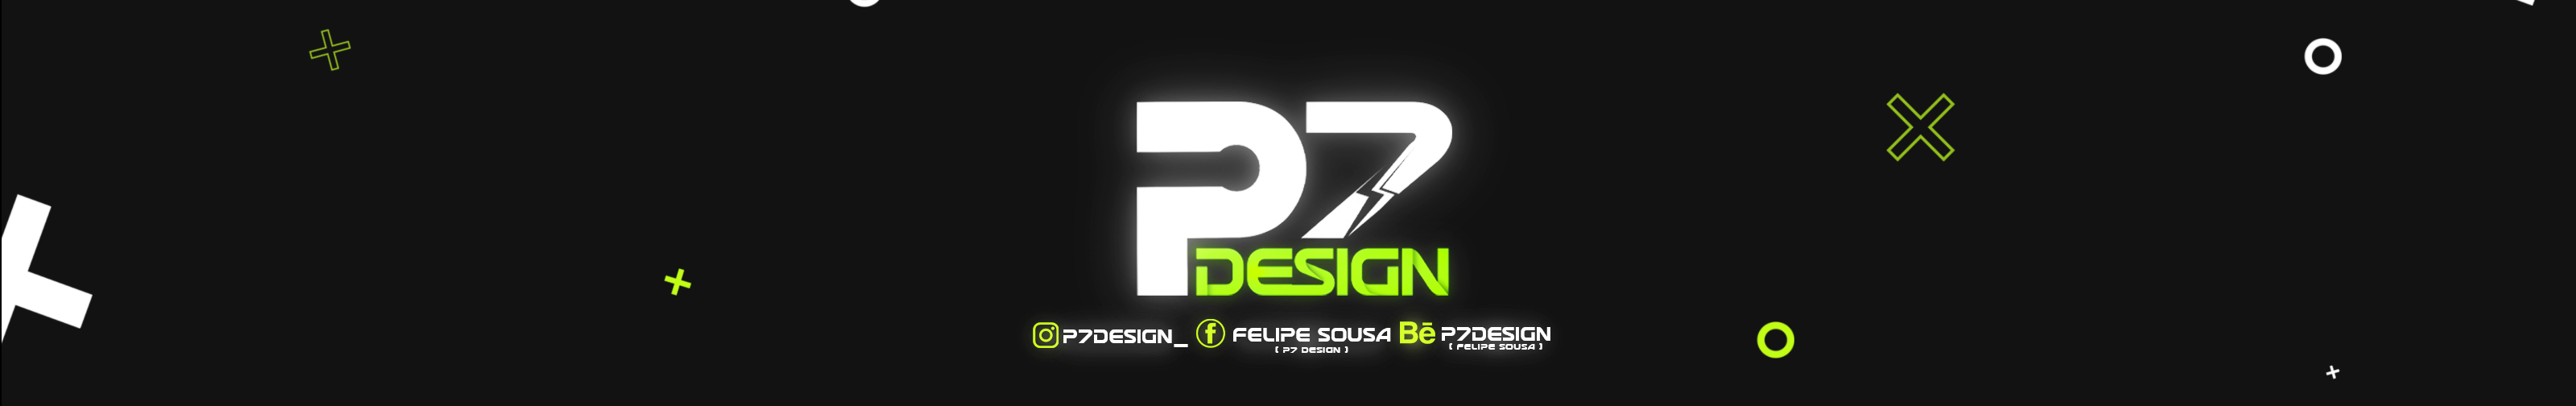 P7 Design's profile banner